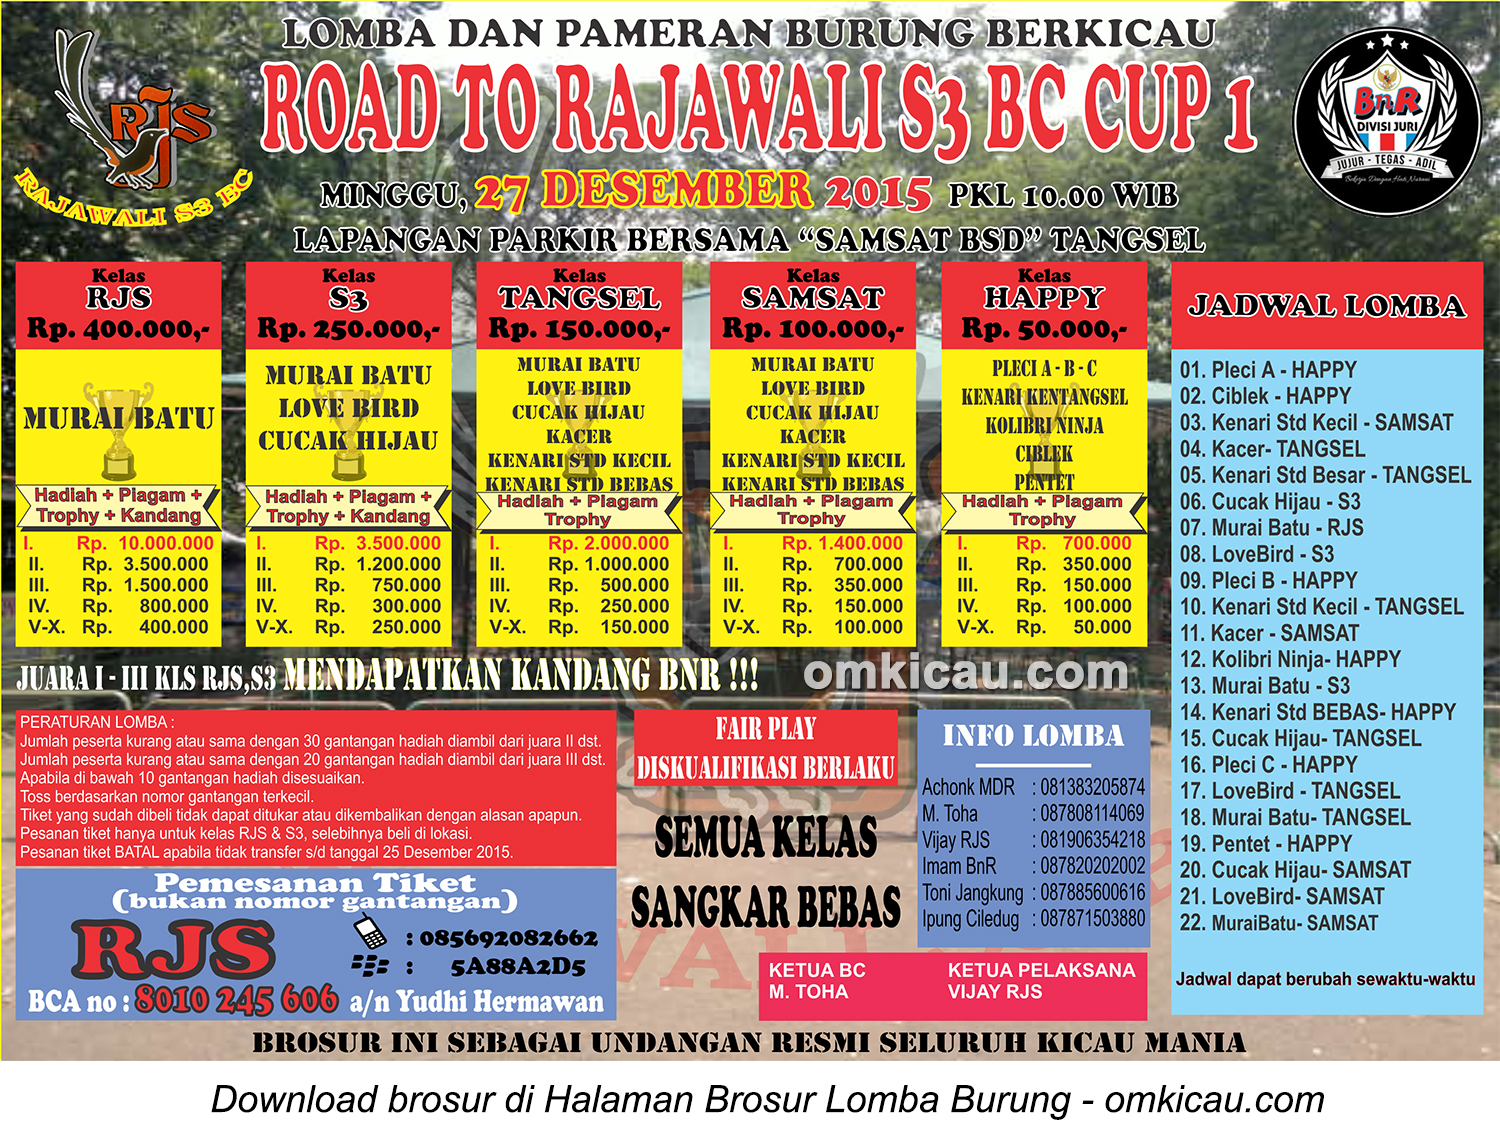 Brosur Lomba Burung Berkicau Road to Rajawali S3 BC Cup 1, Tangerang Selatan, 27 Desember 2015